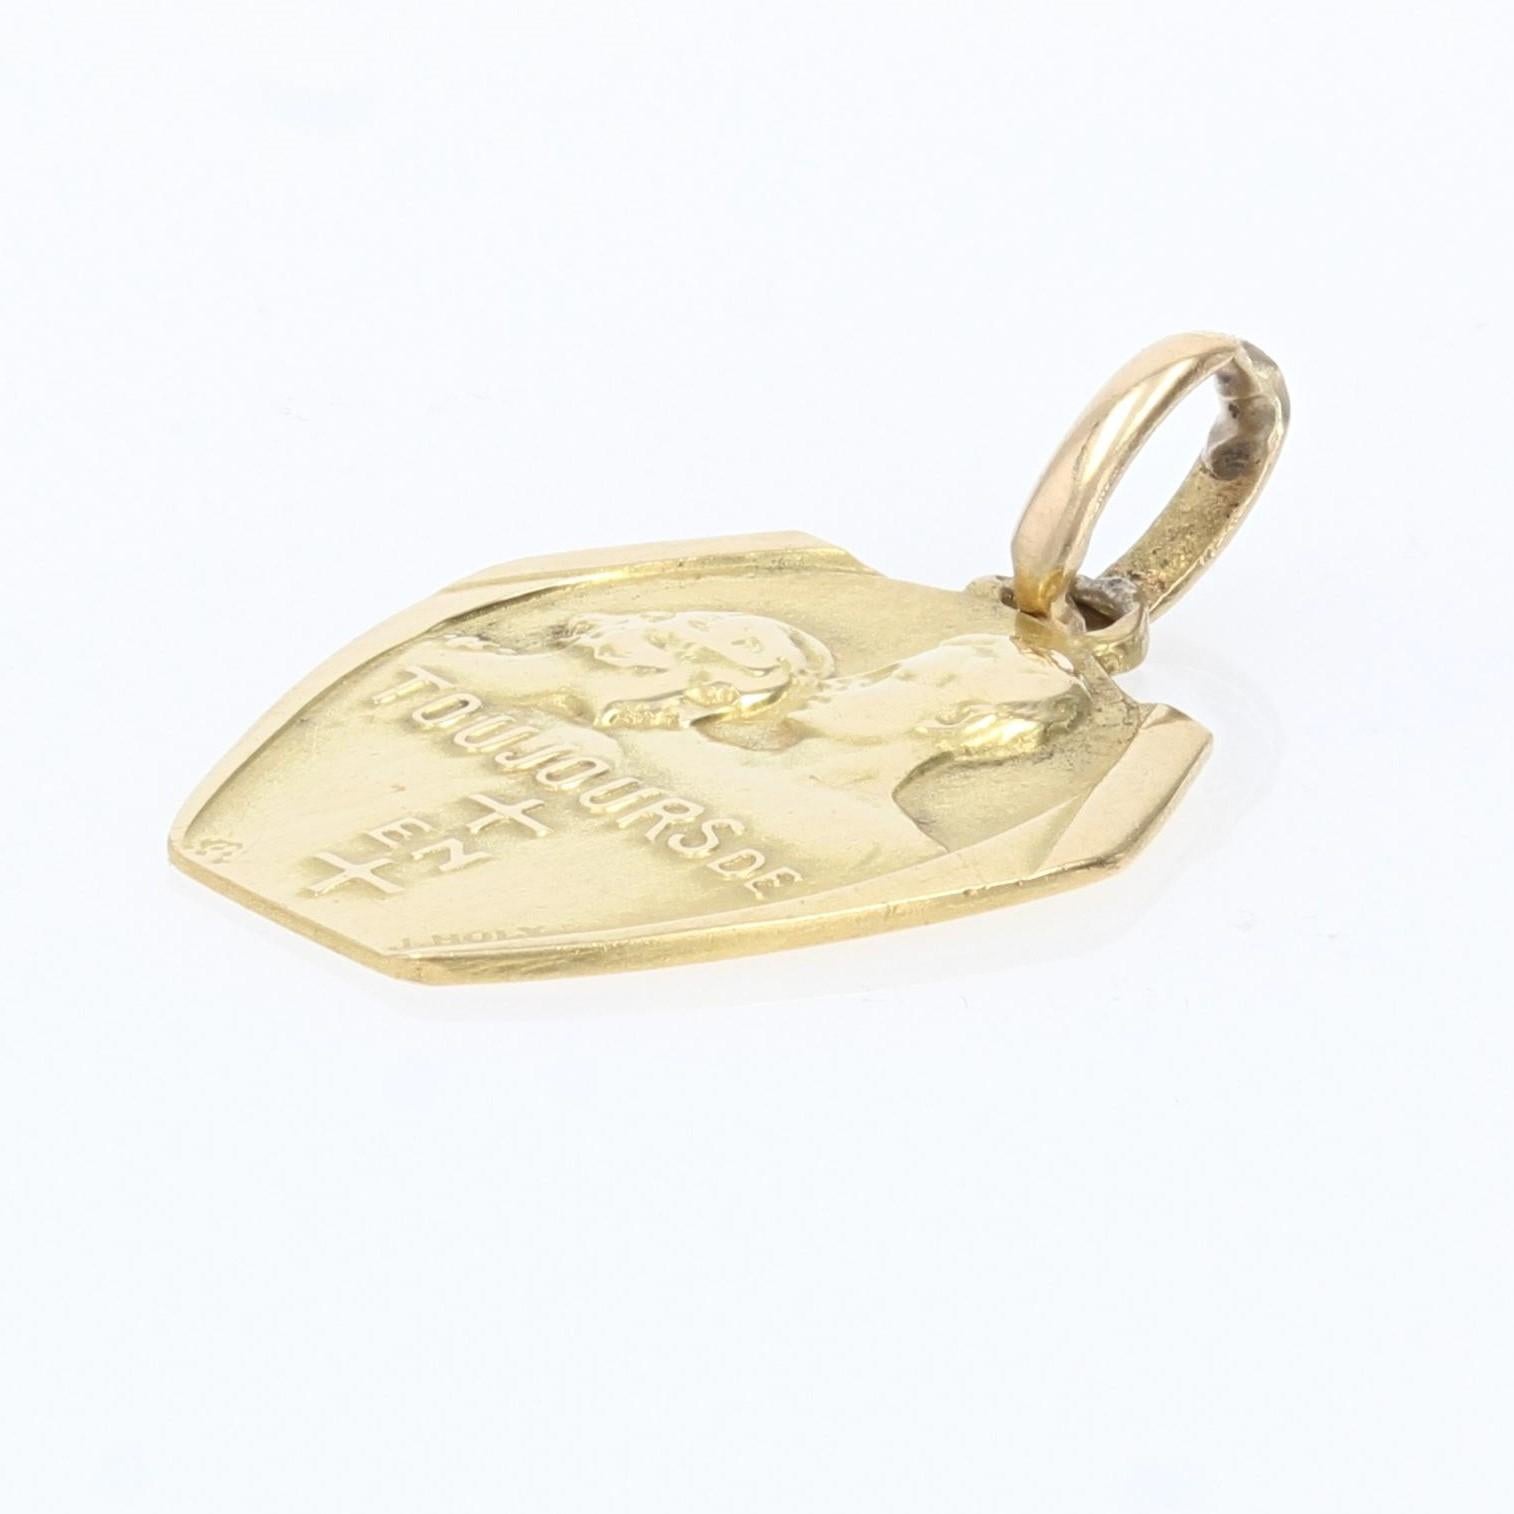 Médaille en or jaune 18 carats, poinçon tête d'aigle.
Cette médaille représente une femme épaulée par un homme et porte l'inscription 